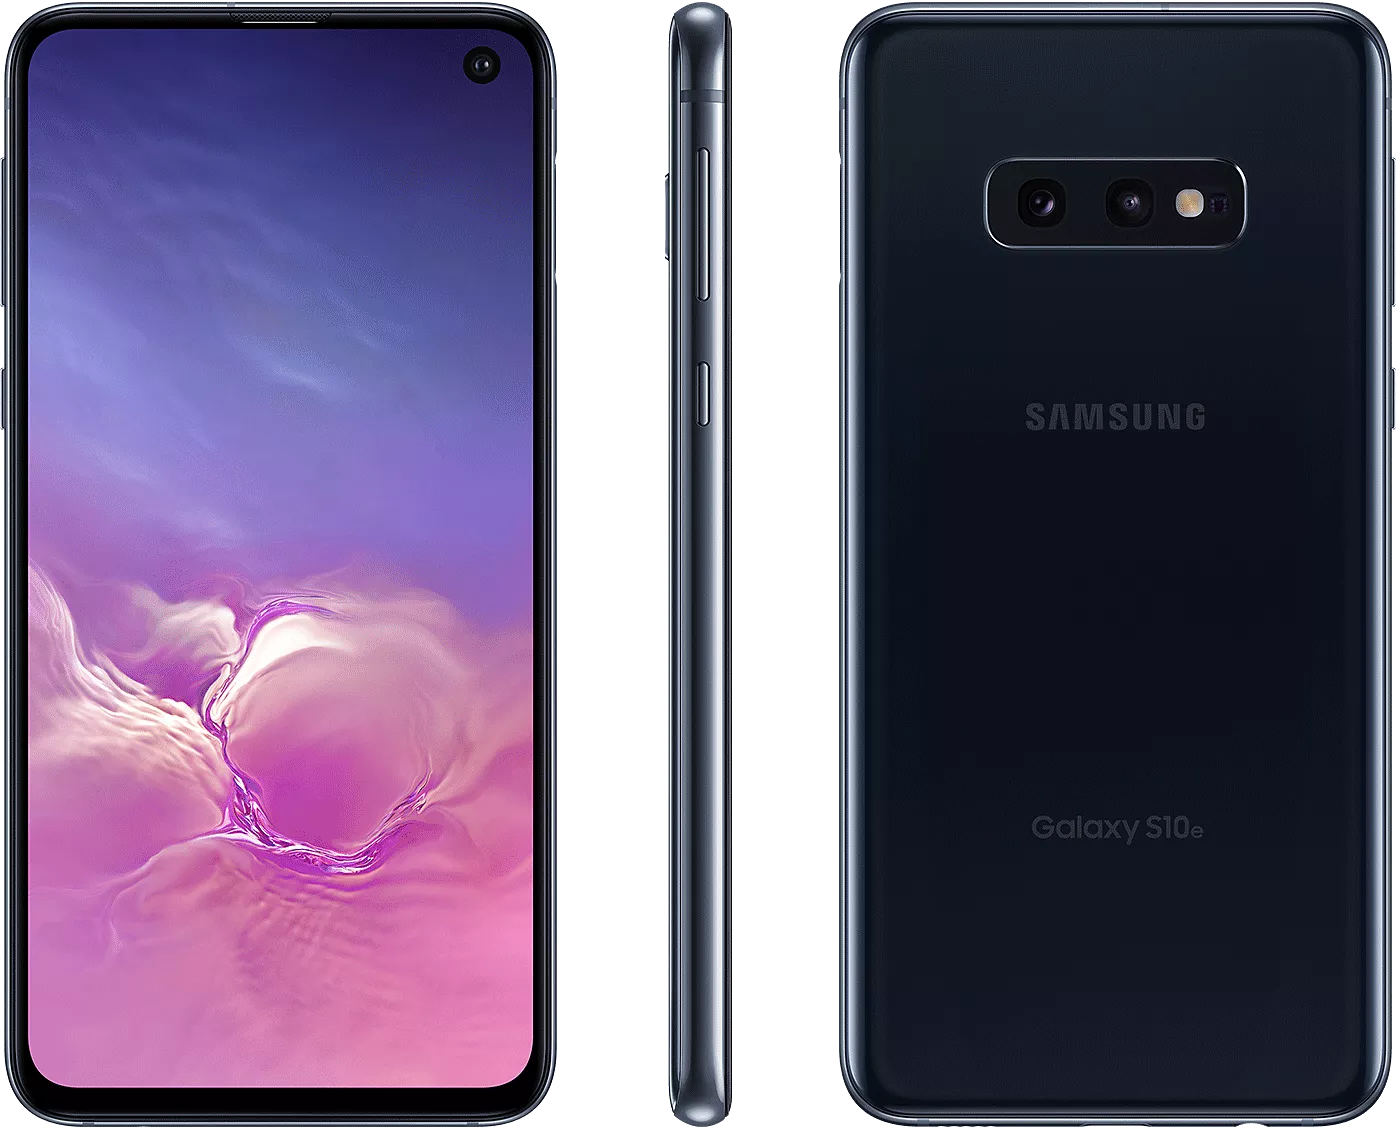 Galaxy s10 8 128. Samsung Galaxy s10 Plus. Samsung Galaxy s10 / s10 +. Samsung Galaxy s10 128gb. Samsung Galaxy s10 8/128gb.